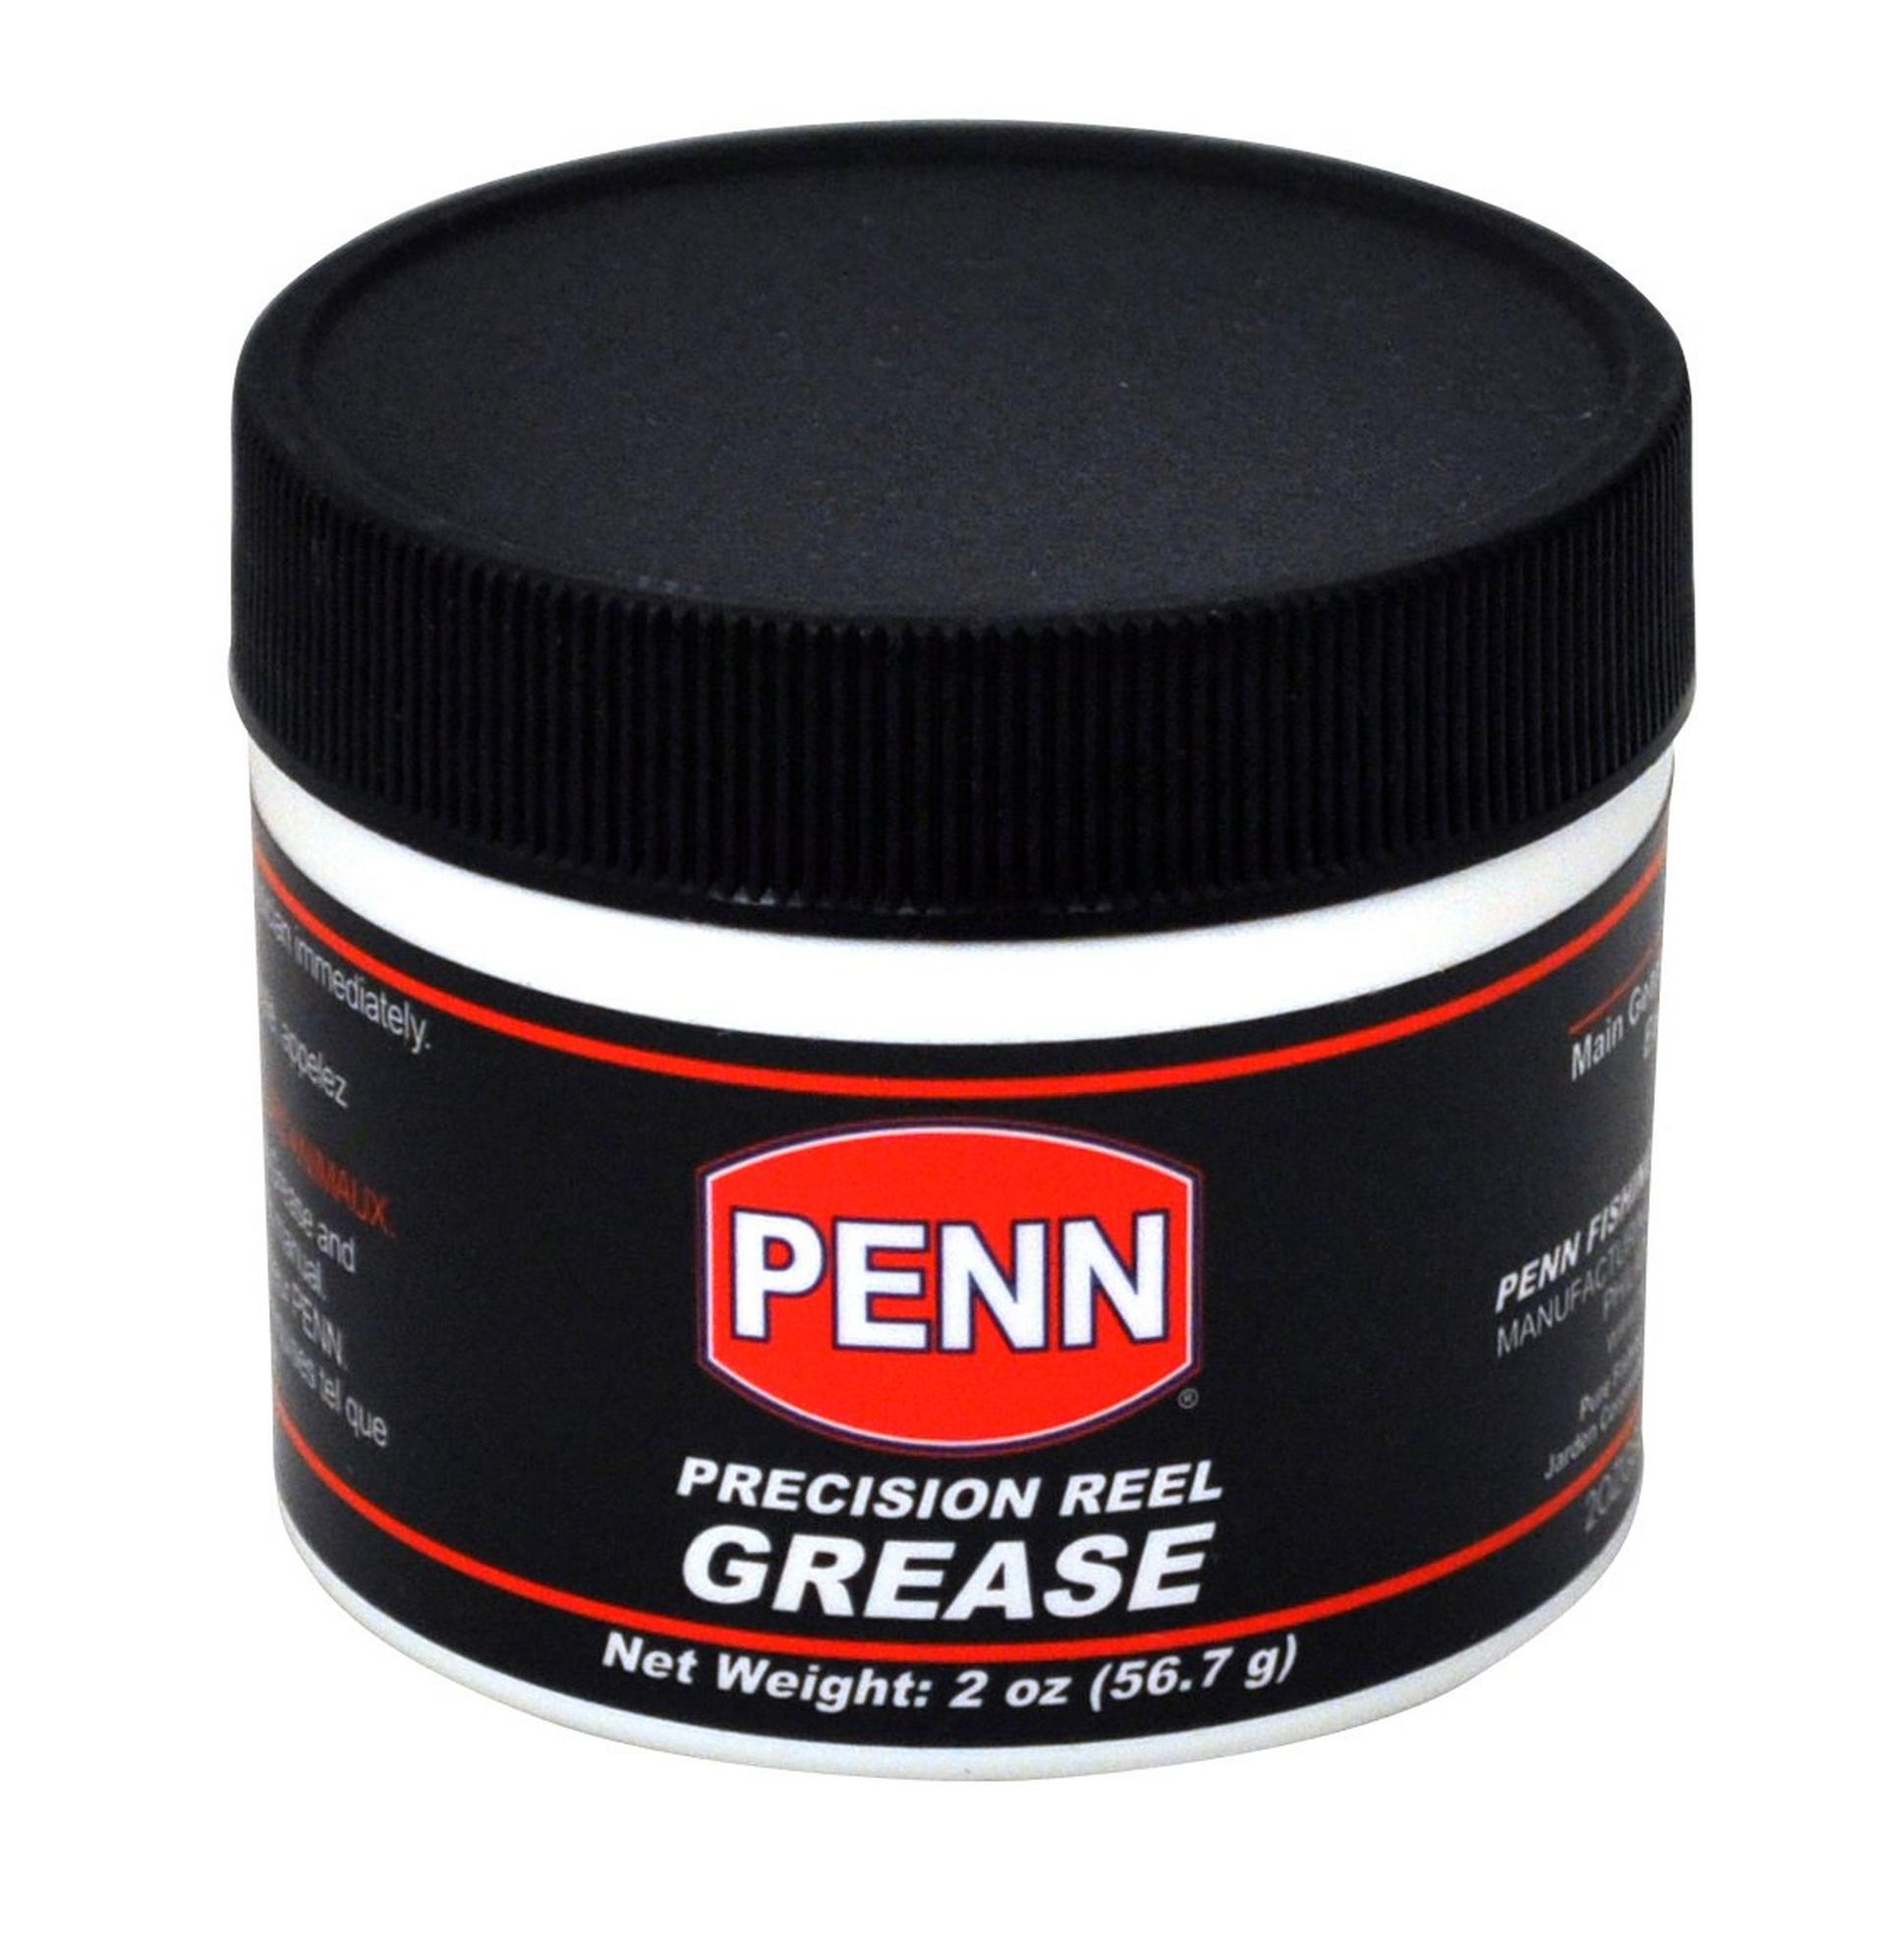 Penn 2 oz Reel Grease